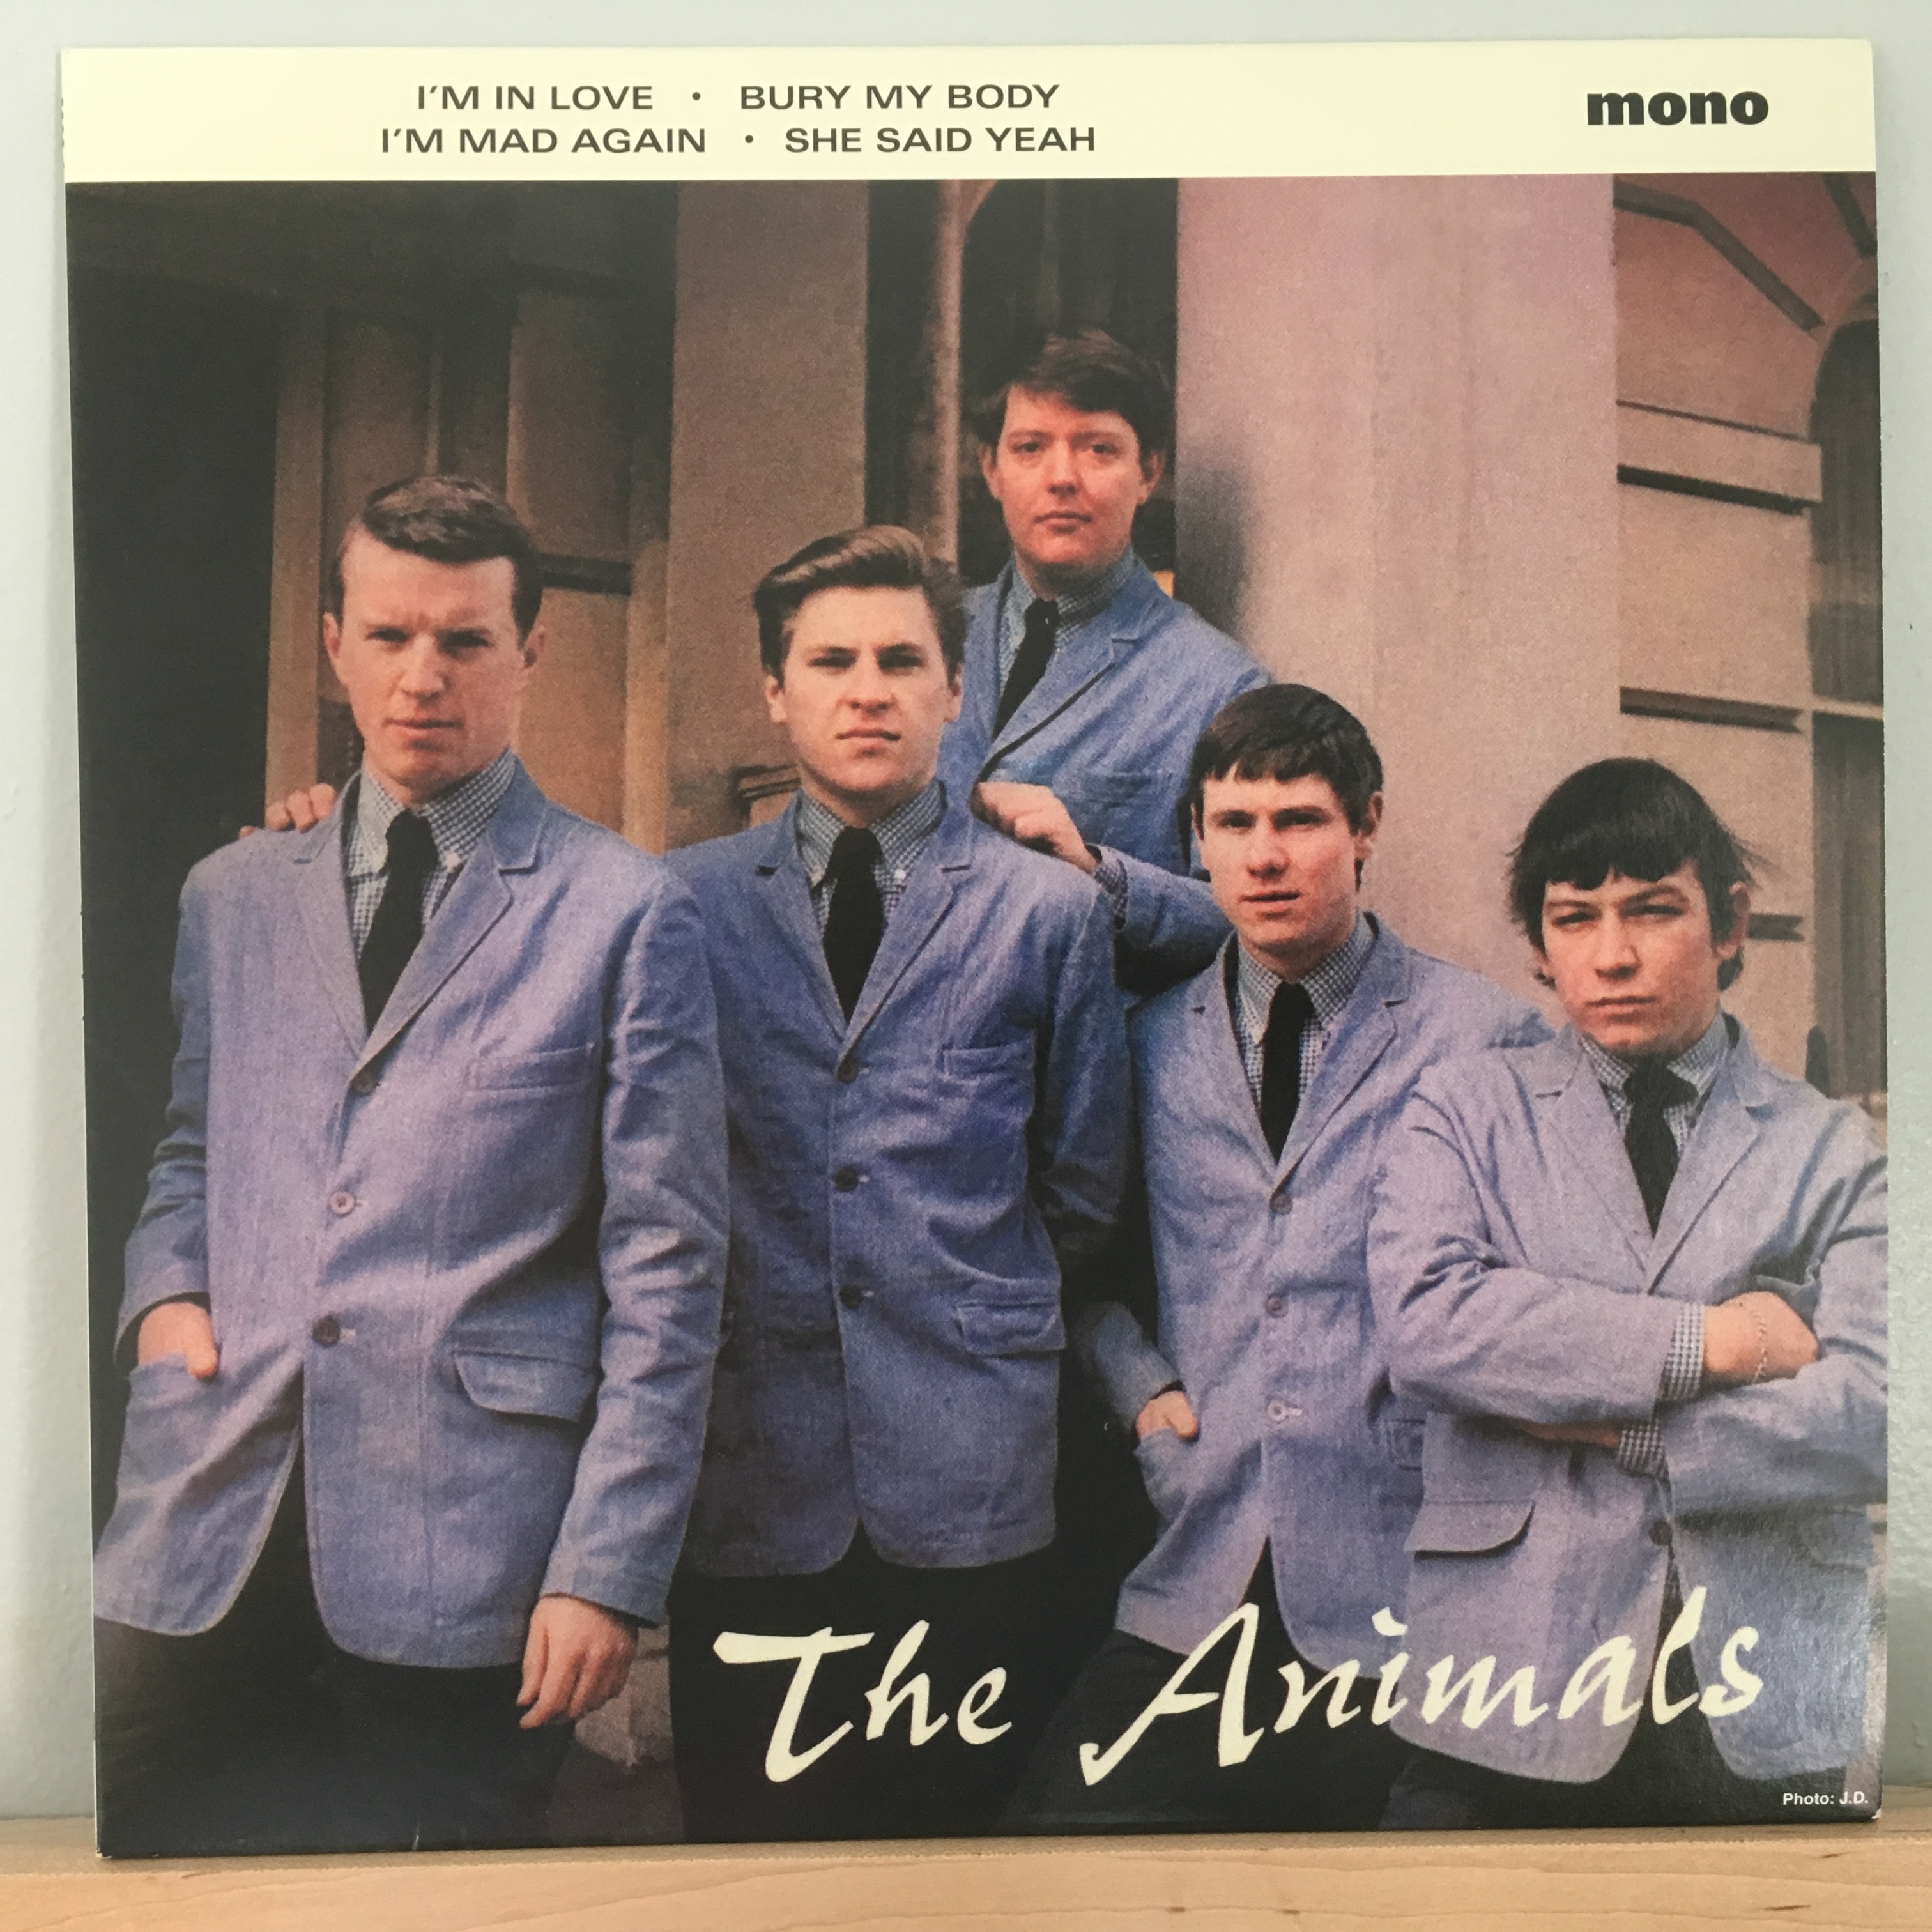 Зе энималс. The animals 1964. The animals альбомы. Группа Энималс альбомы. Animals обложка альбома.